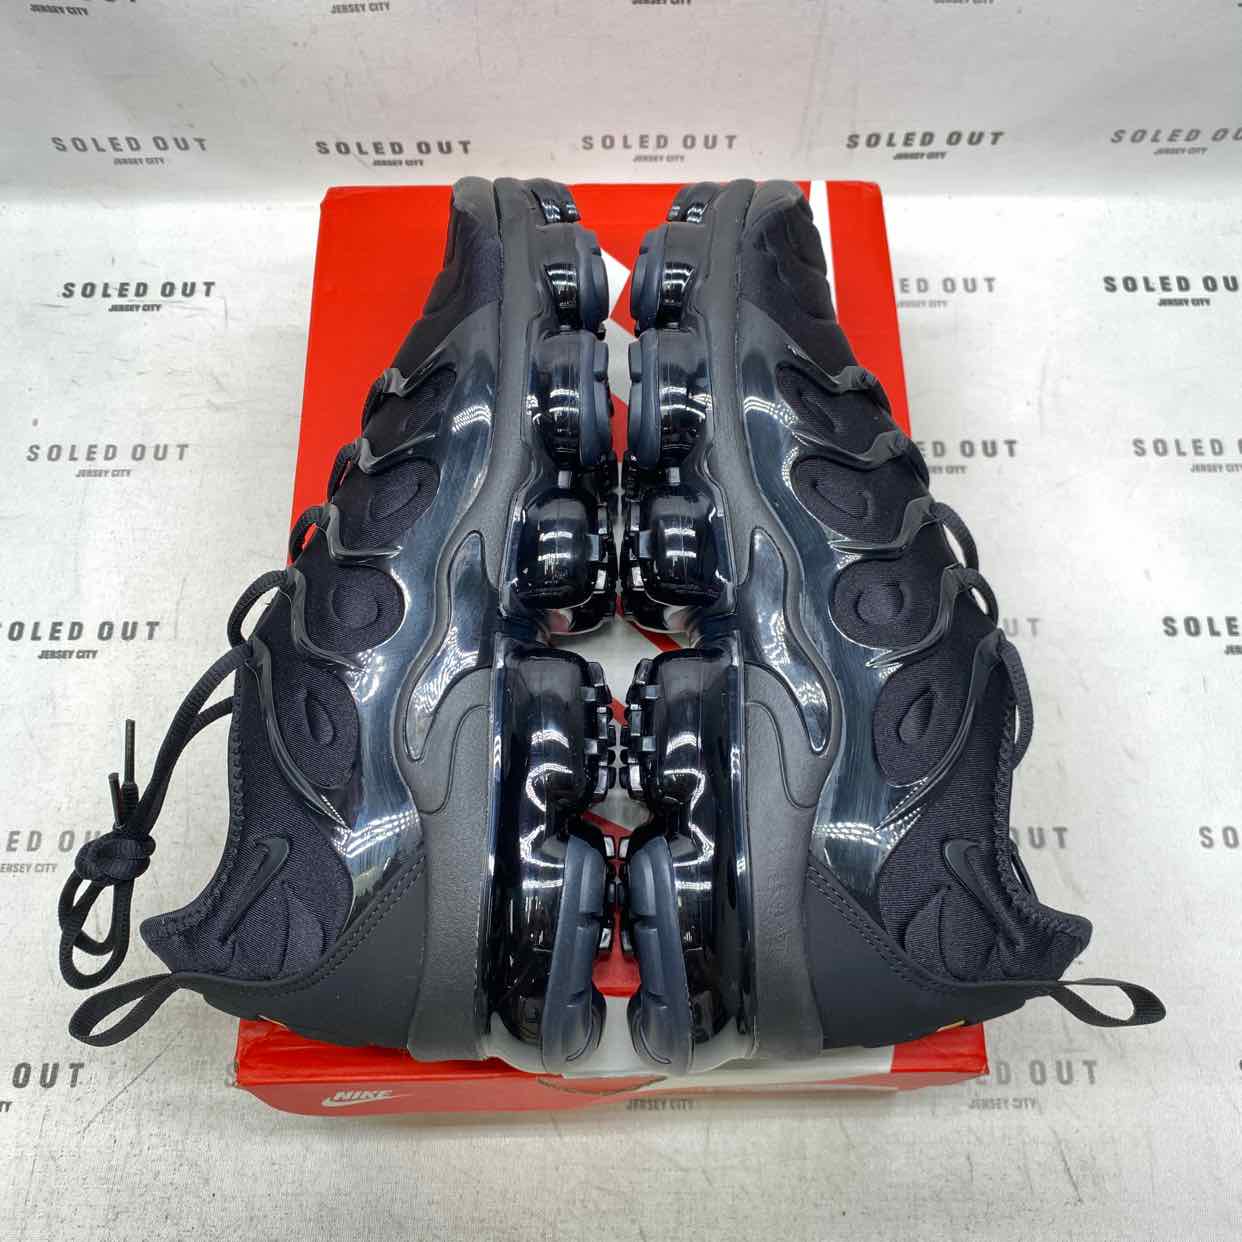 Nike Air Vapormax Plus &quot;Triple Black&quot; 2018 New Size 11